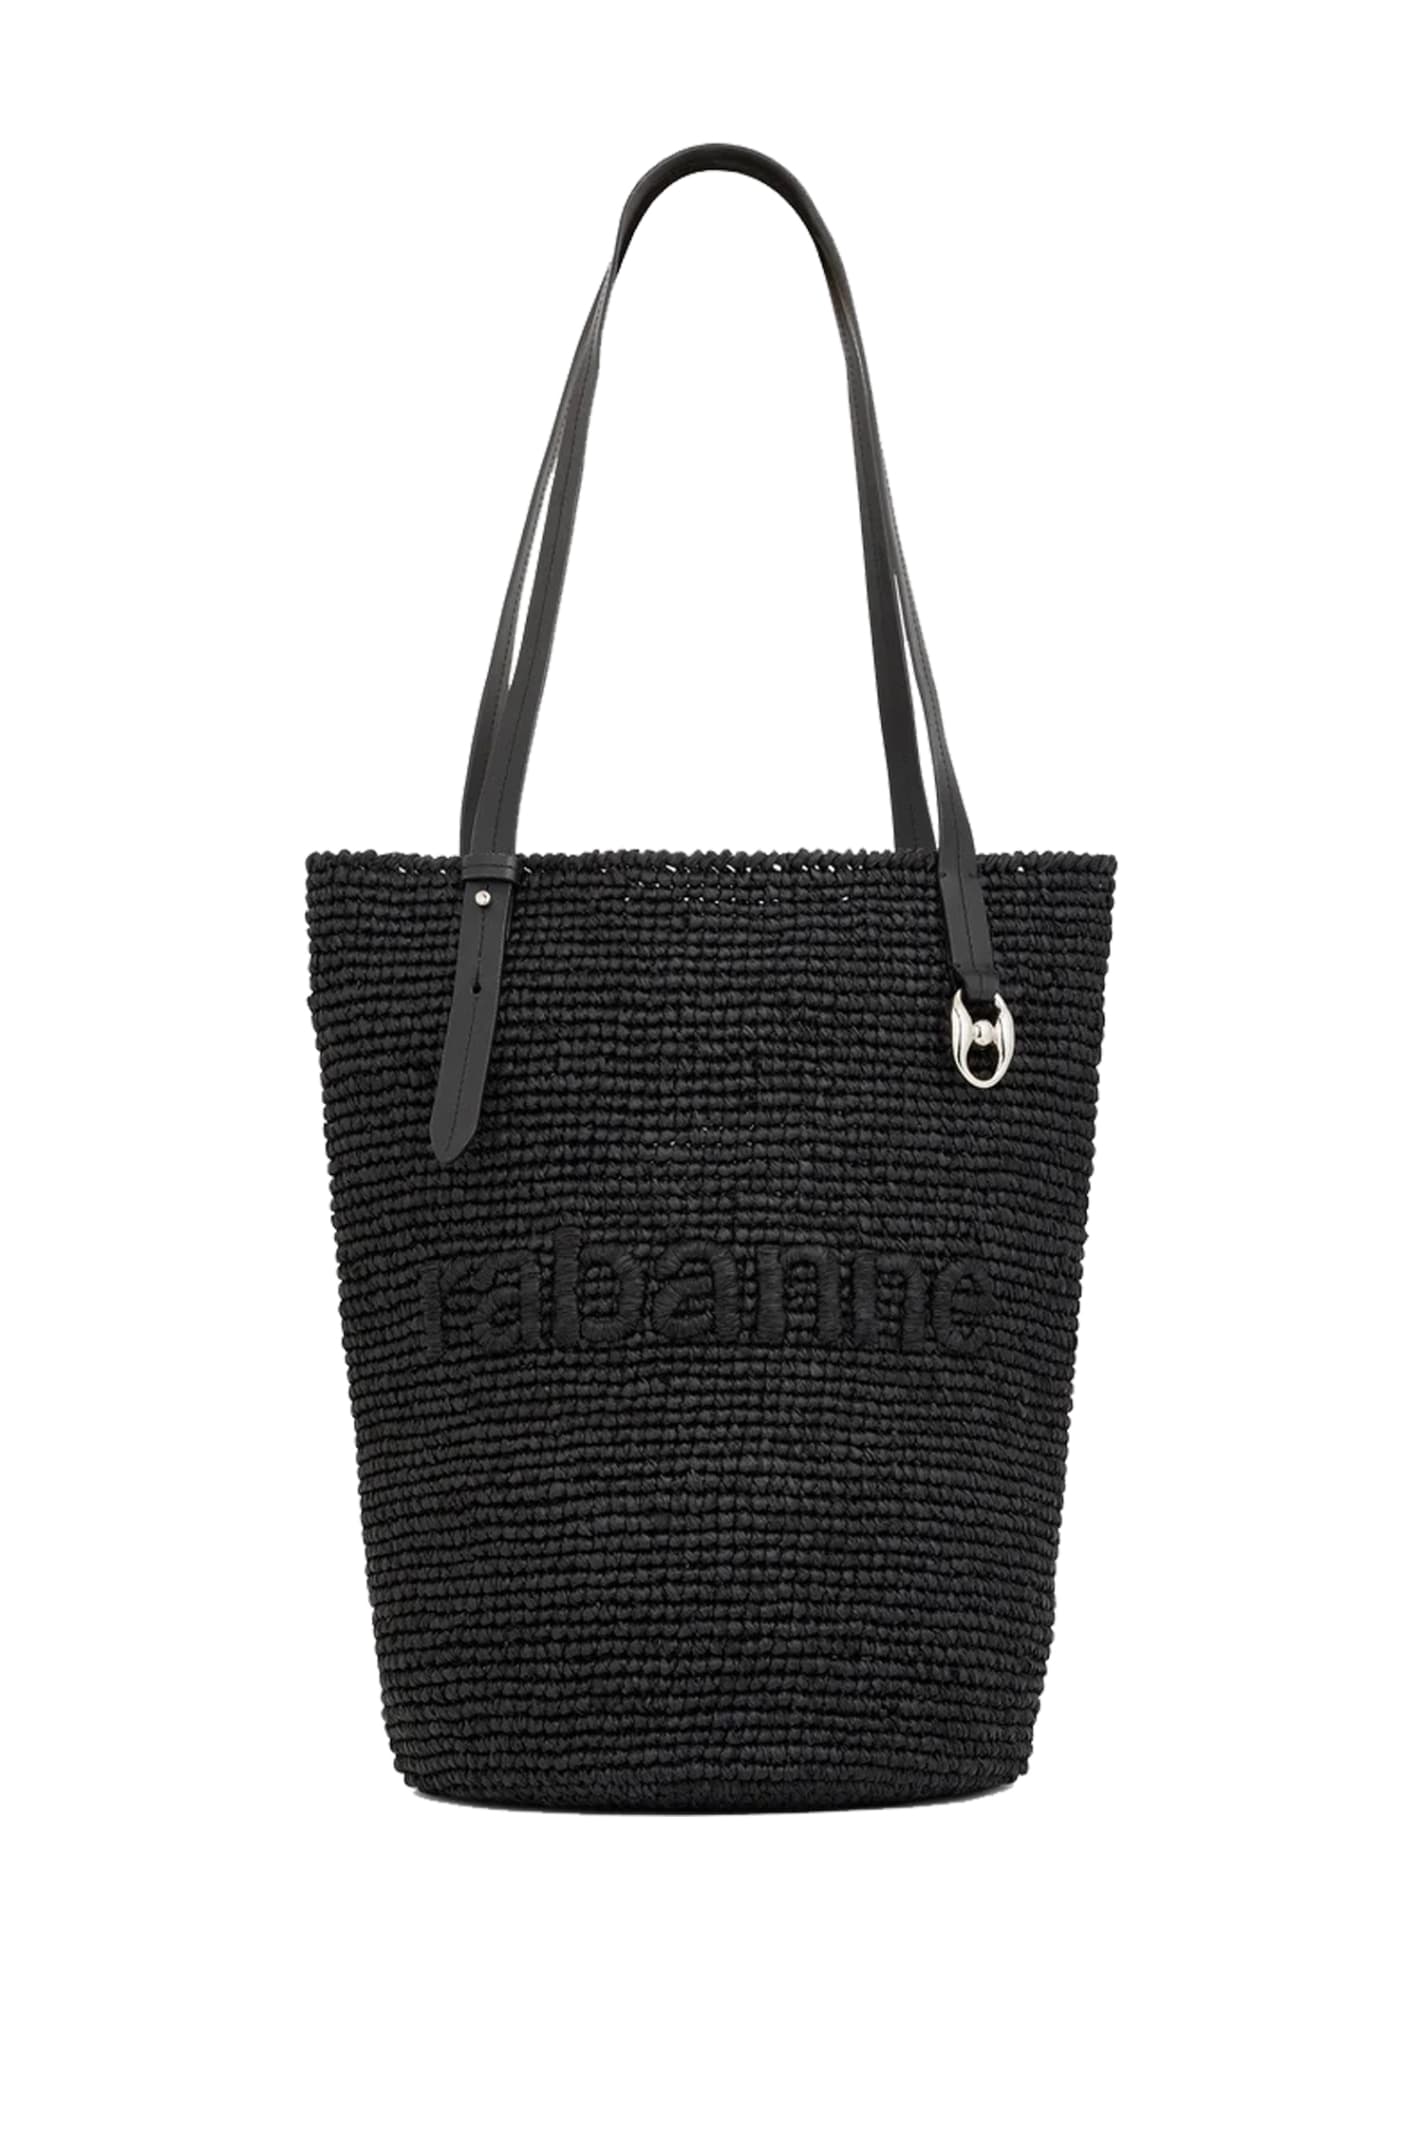 Paco Rabanne Shoulder Bag In Black